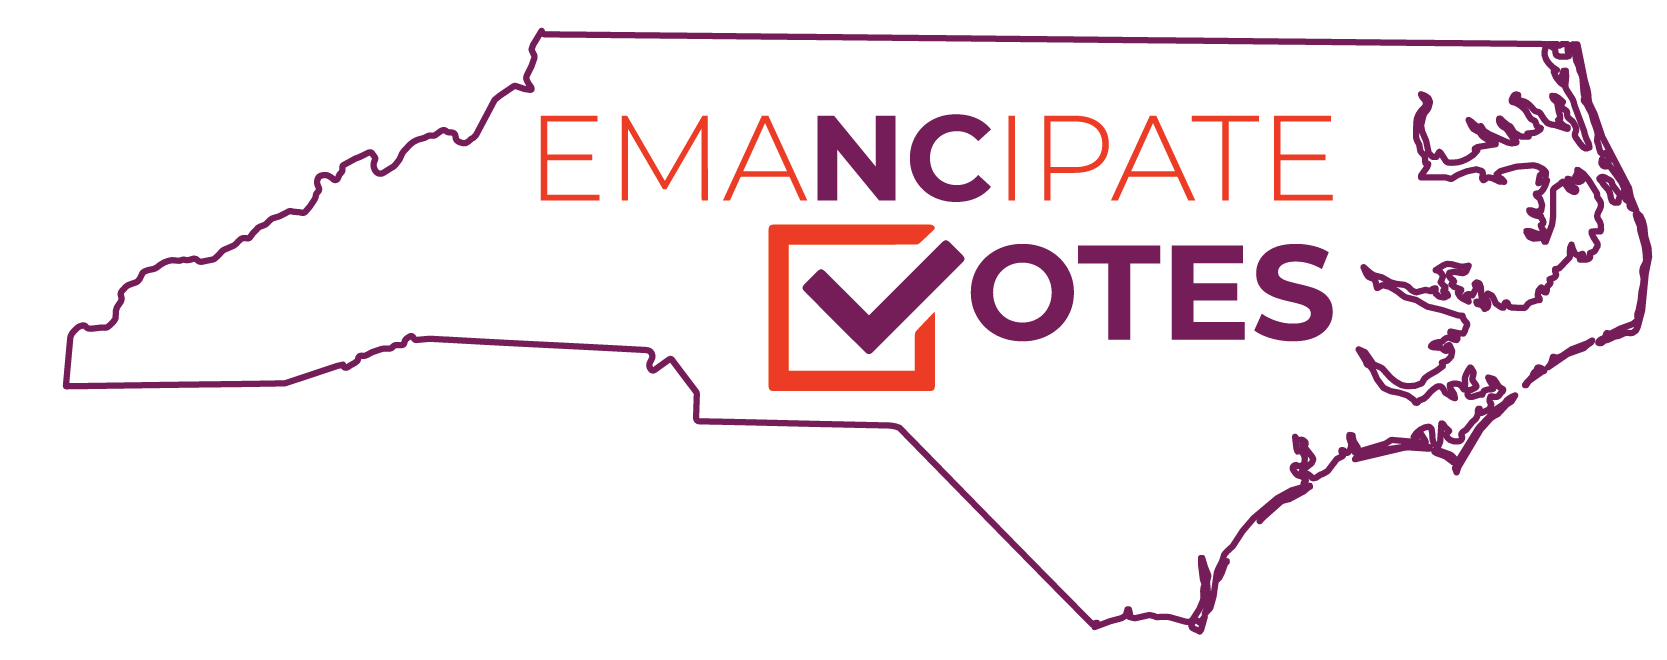 Emancipate Votes